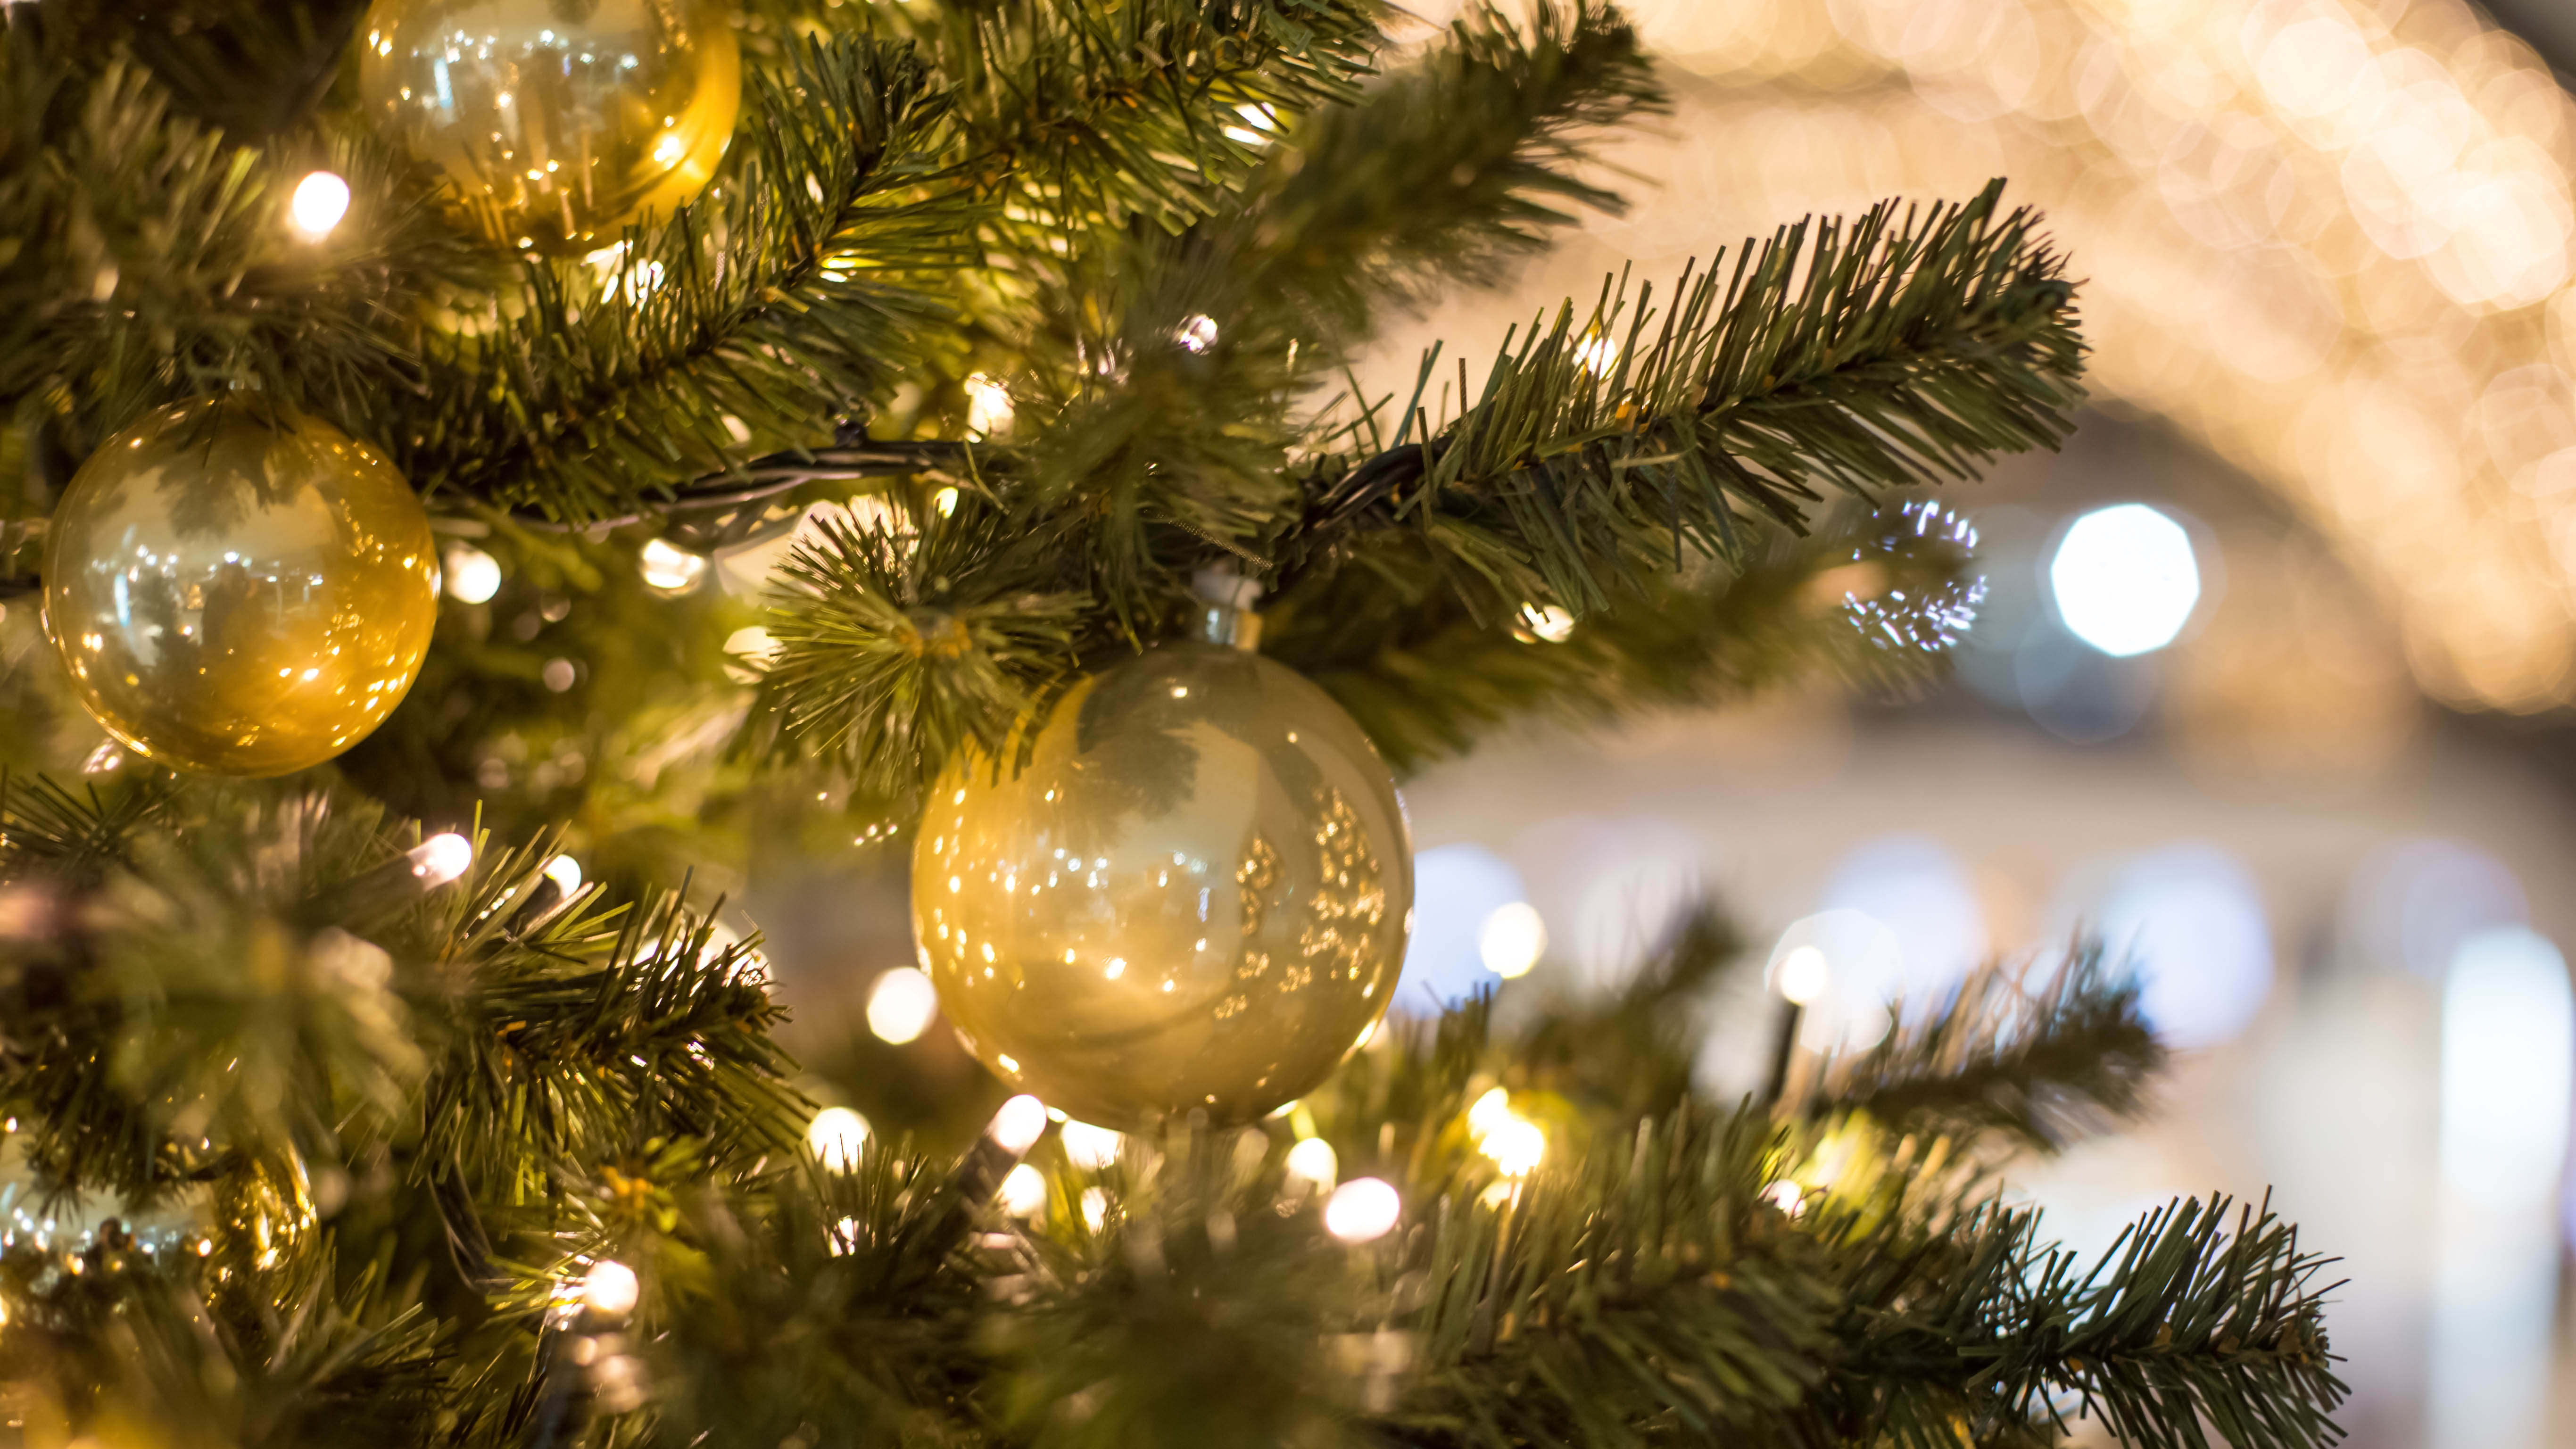 Christmas ball and lights on the tree